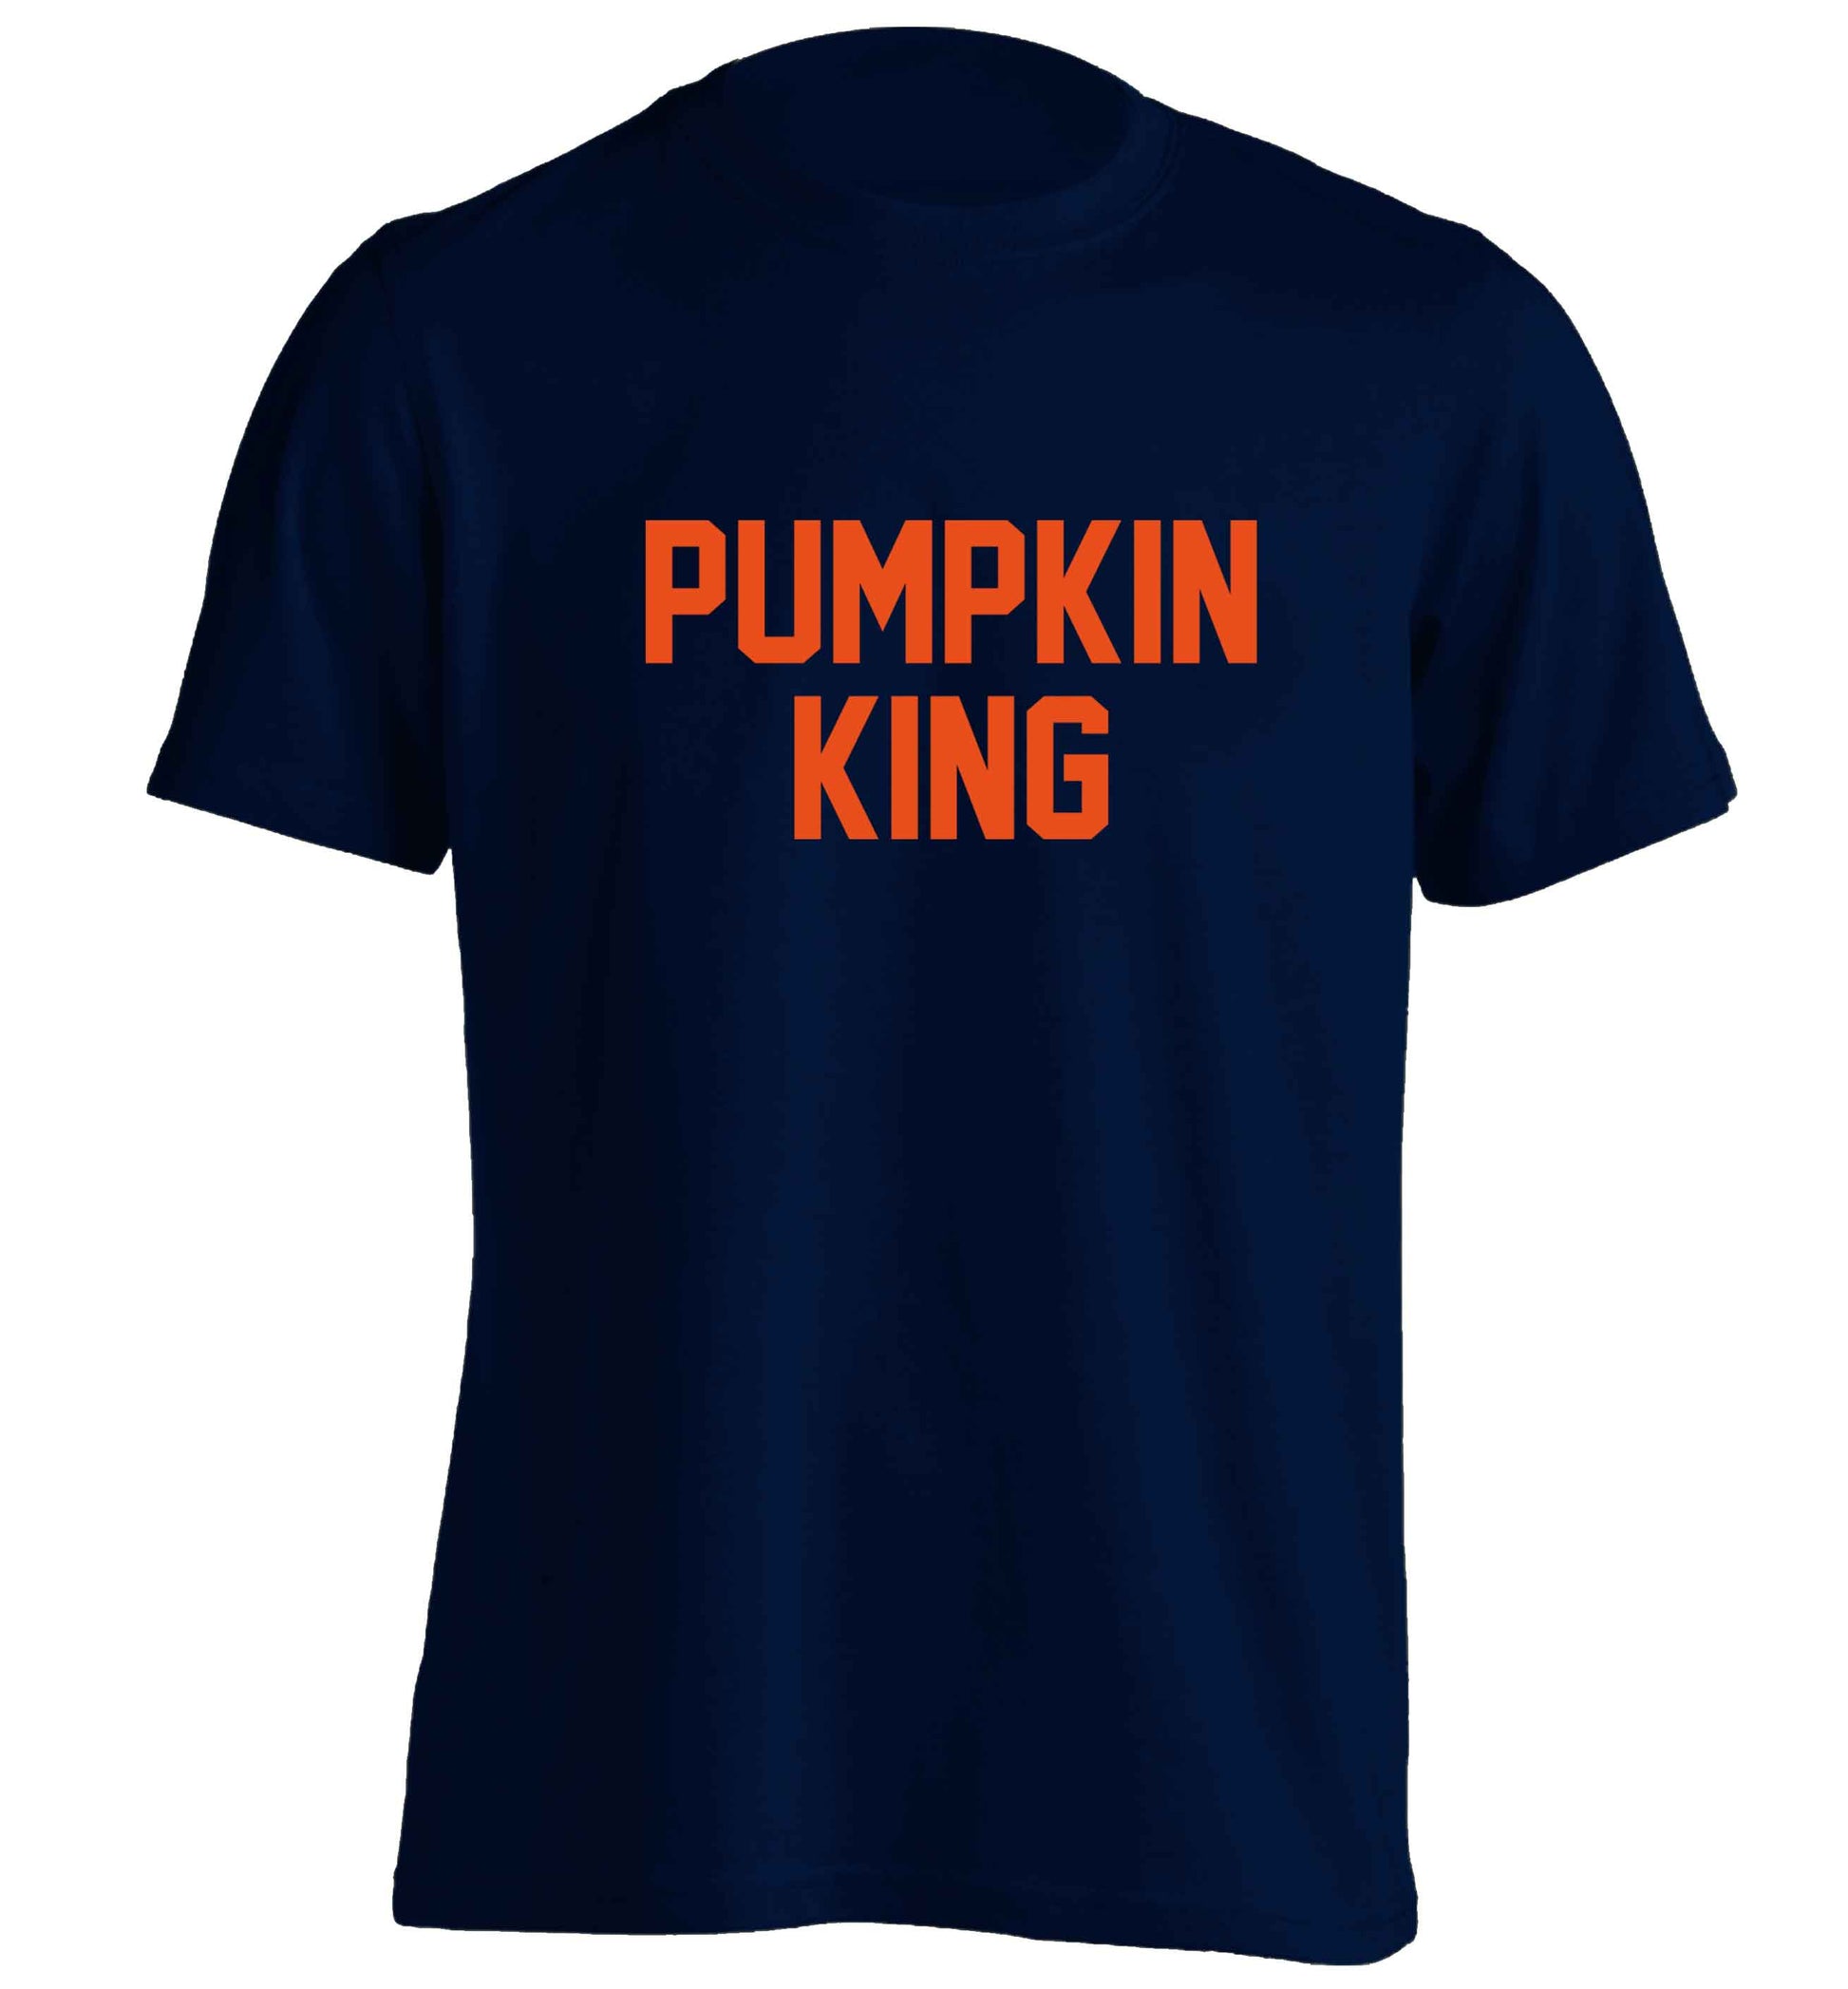 Pumpkin Queen adults unisex navy Tshirt 2XL